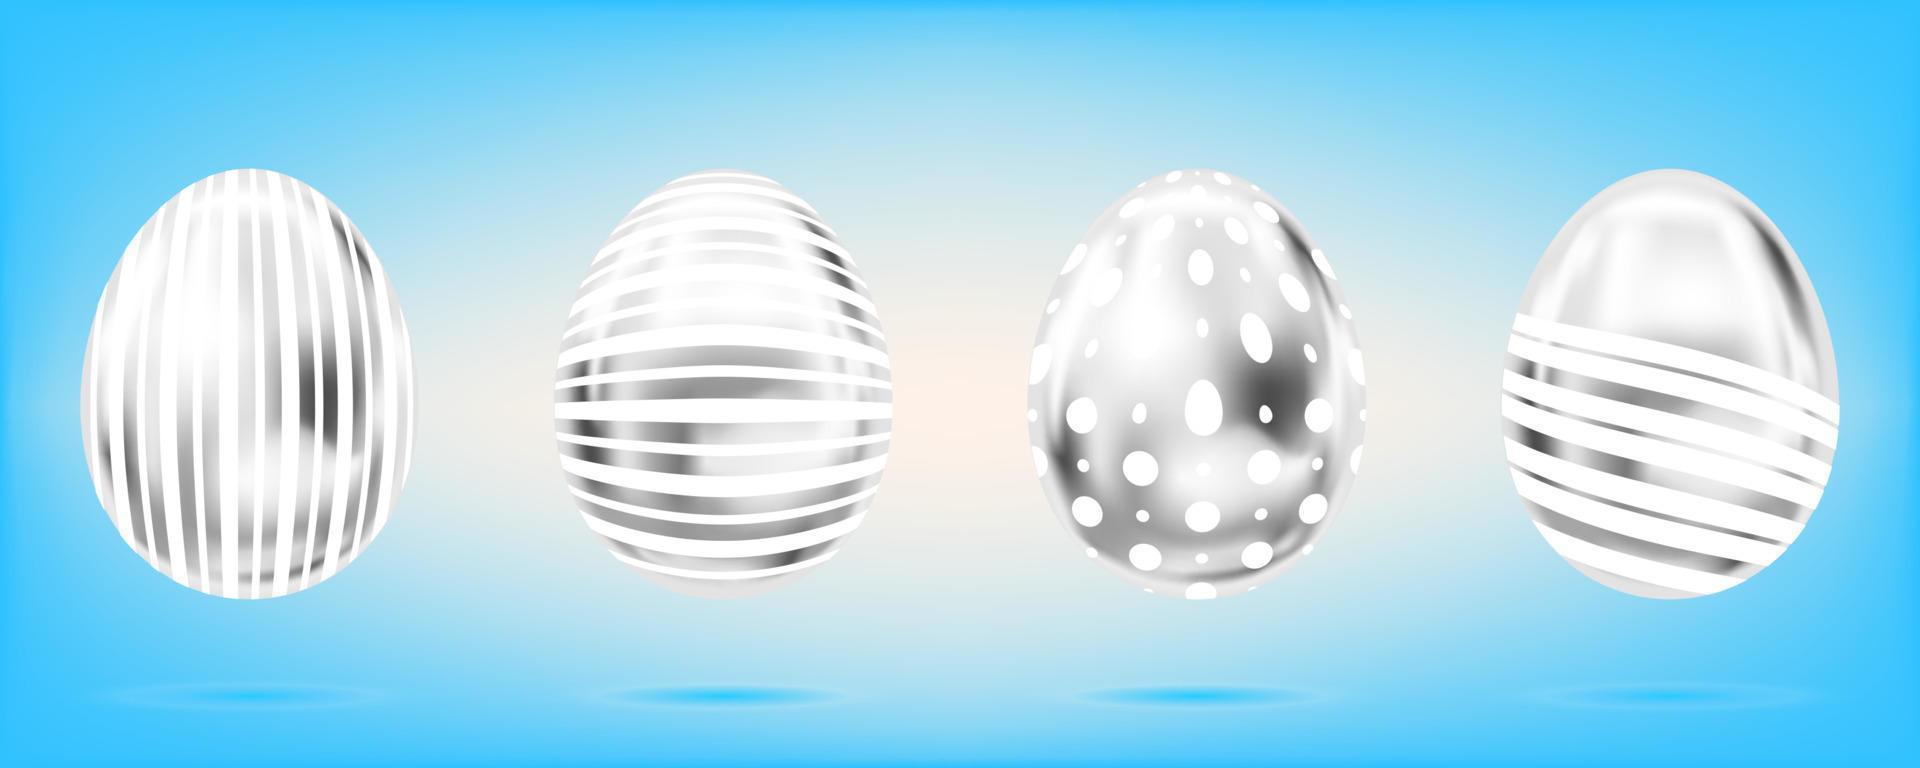 quatro ovos de prata sobre o fundo azul do céu. objetos isolados para decoração de páscoa. pontos e listras ornamentado vetor